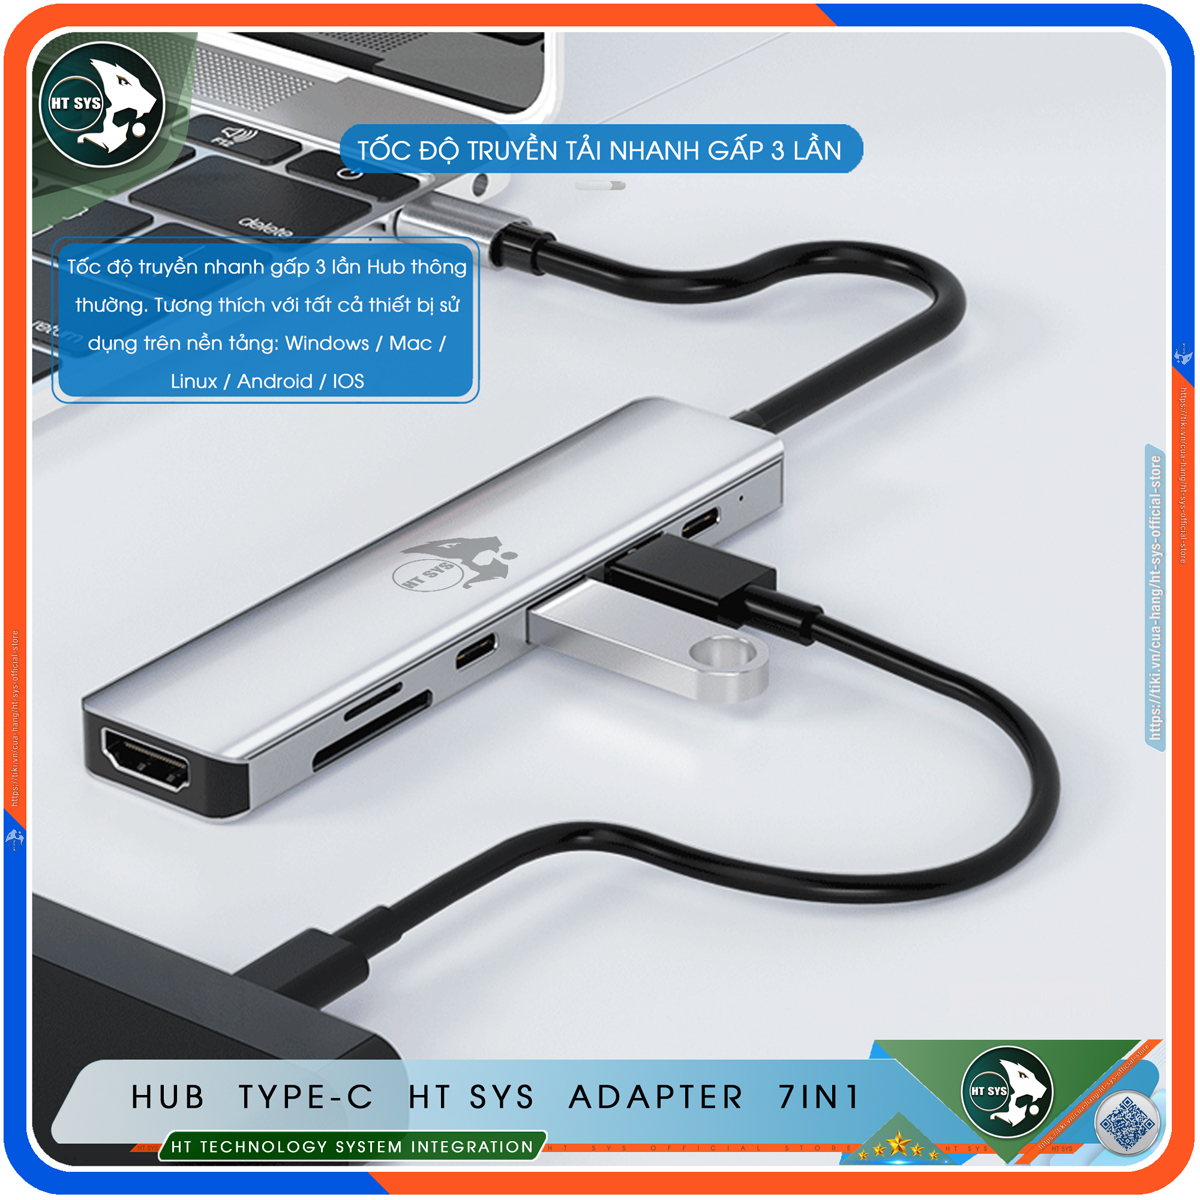 Hub Type C HT SYS 7in1 - Hub Chuyển Đổi USB Type-C To HDMI Chuẩn HDTV - HDMI 4K, USB-C, USB 3.0, Sạc Nhanh Type C PD, Khe Đọc Thẻ SD/TF - Kết Nối Tốc Độ Cao - Dành Cho MacBook / Tivi / Laptop / PC / Máy Tính Bảng / Smartphone – Hàng Chính Hãng